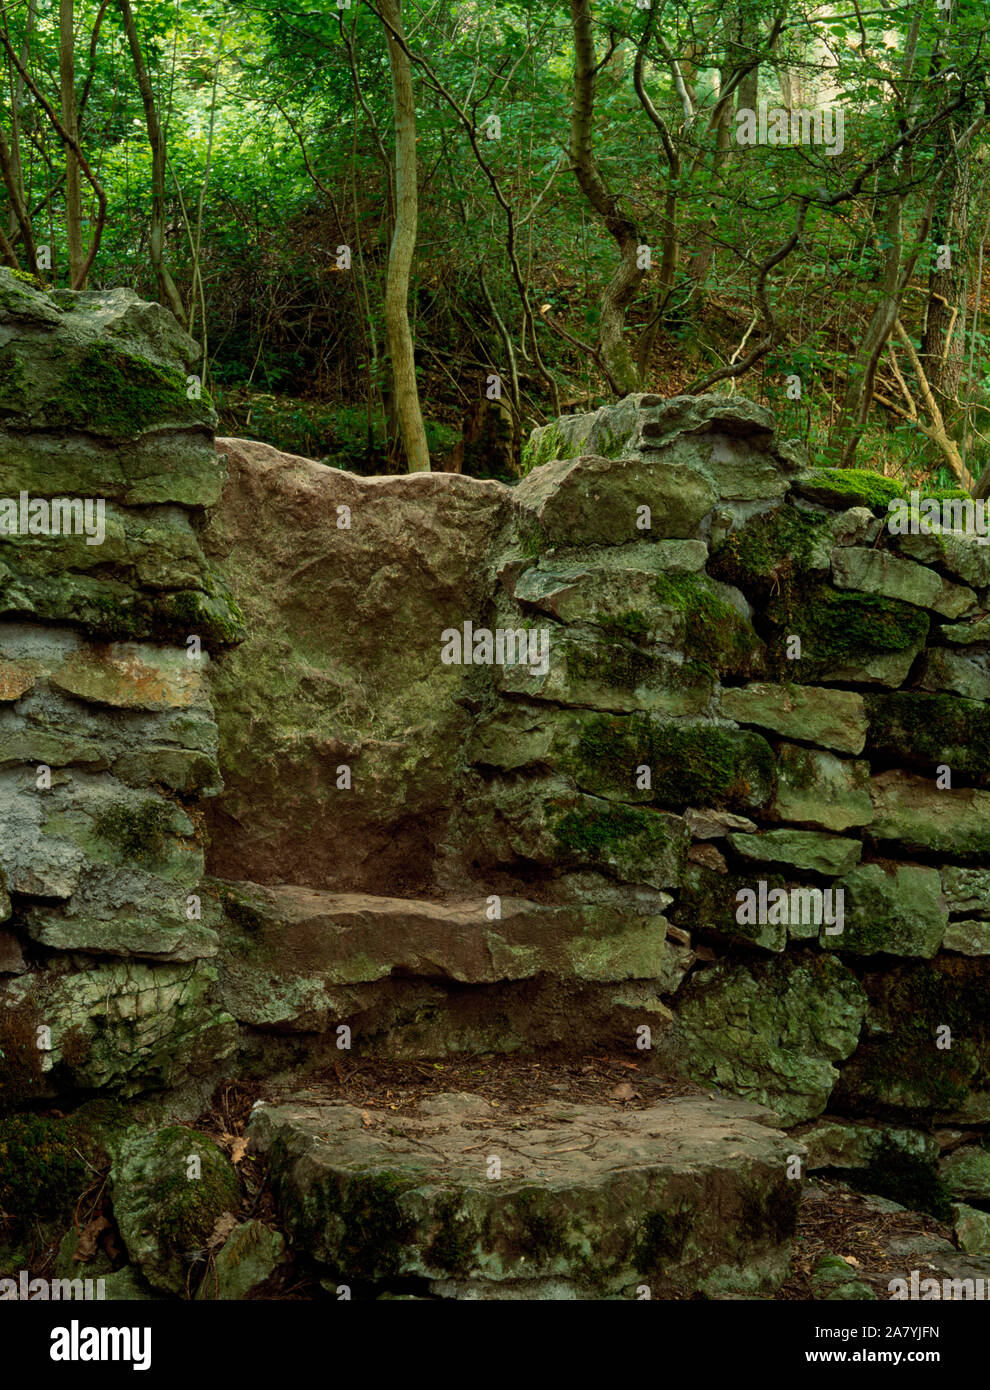 Stil aus Stein restauriert im Coed Henblas, graigfechan. Wanderwege durch Wald Zusammenführen in einem umgebauten Kalkstein platte Stil in einem trockenmauern Wand gesetzt. Stockfoto